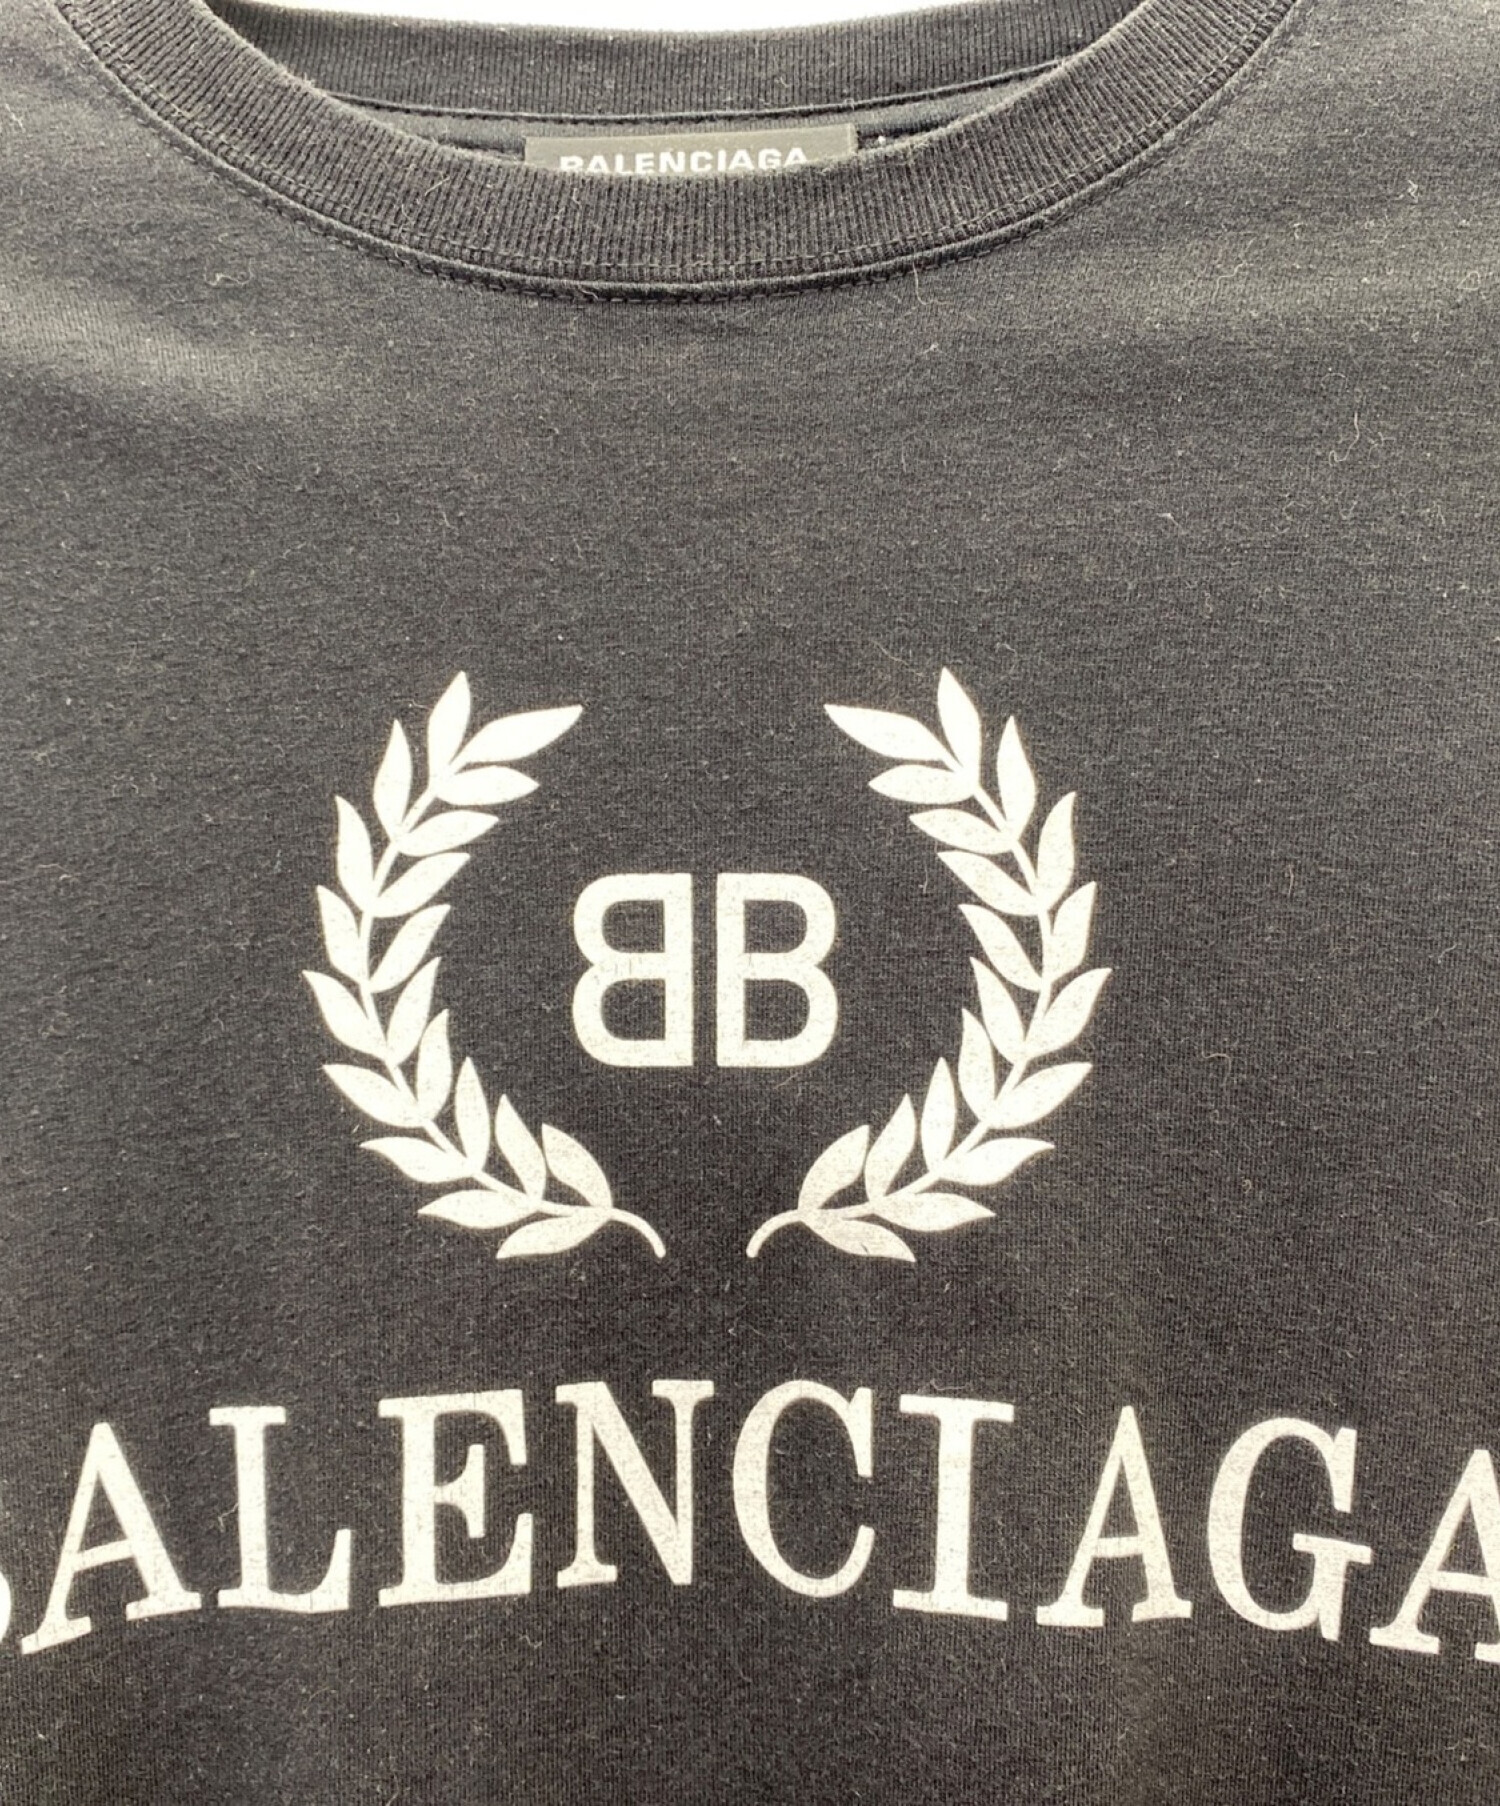 BALENCIAGA バレンシアガ ×adidas ユーズド加工ロゴ刺繍半袖Tシャツ クルーネックカットソー ブラック/レッド 724554 TNVA6